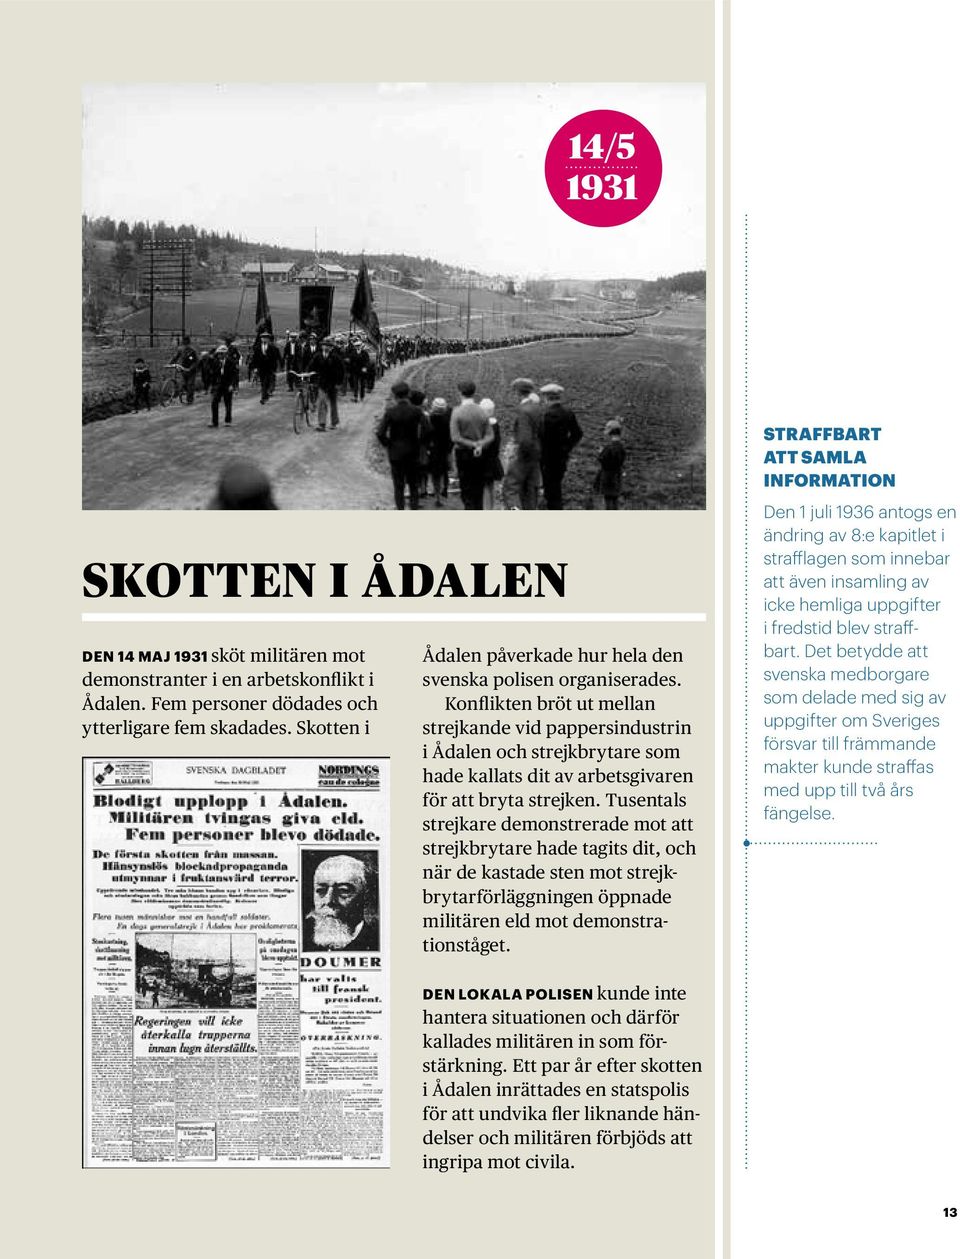 Konflikten bröt ut mellan strejkande vid pappersindustrin i Ådalen och strejkbrytare som hade kallats dit av arbetsgivaren för att bryta strejken.